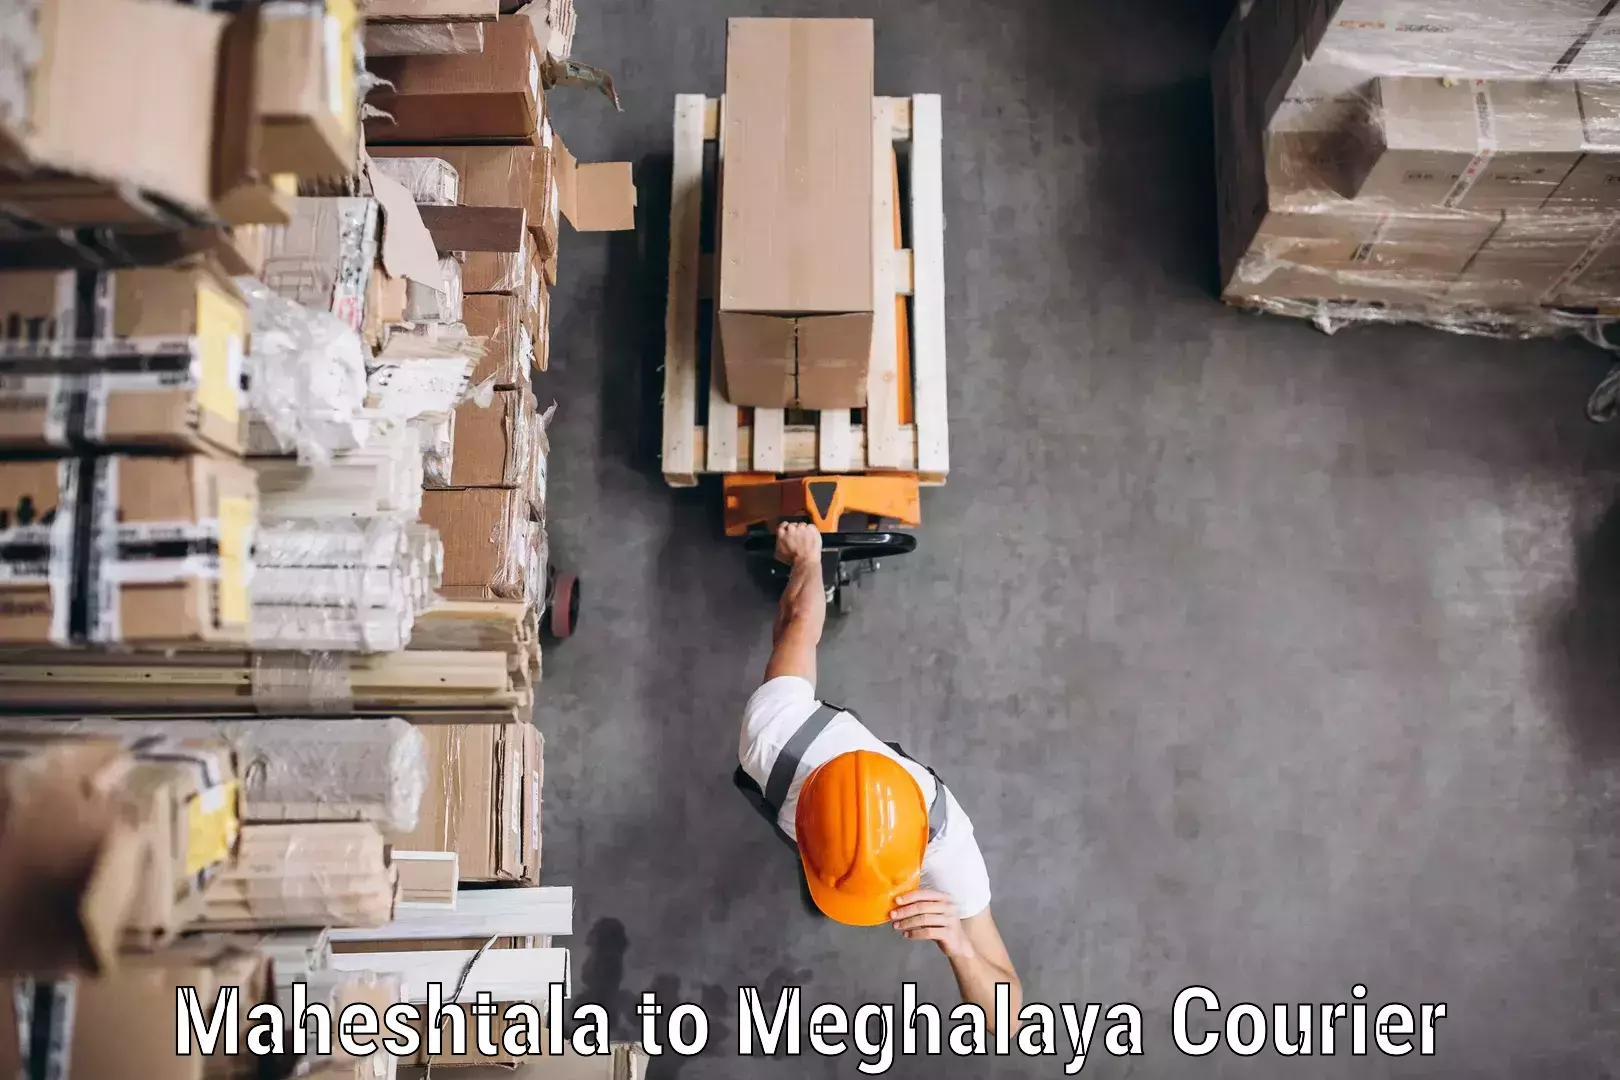 Courier service partnerships Maheshtala to Mairang